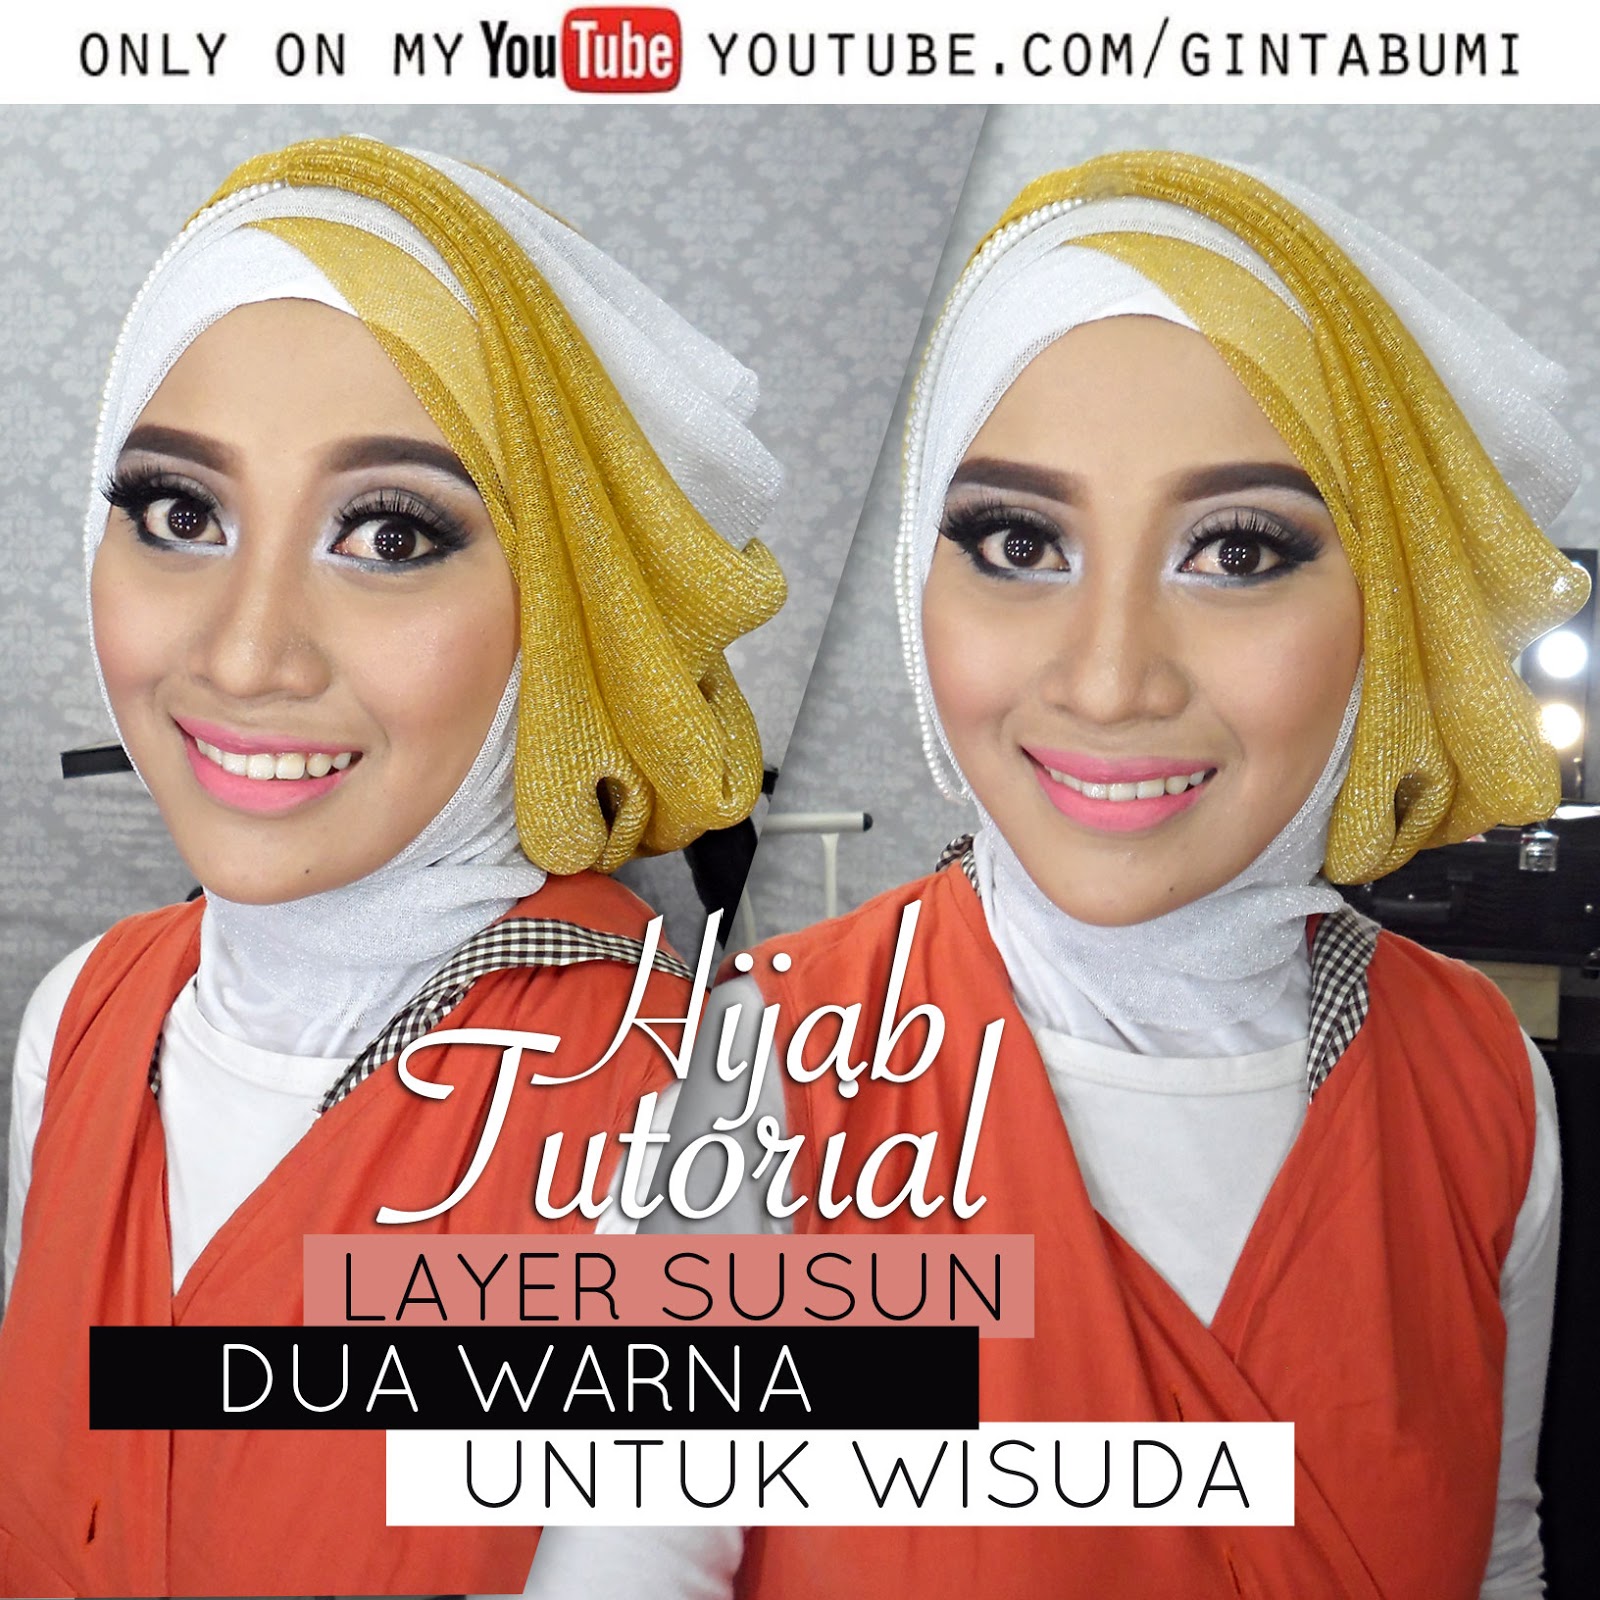 Tutorial Jilbab Wisuda Silang Tumpuk Youtube Tutorial Hijab Paling